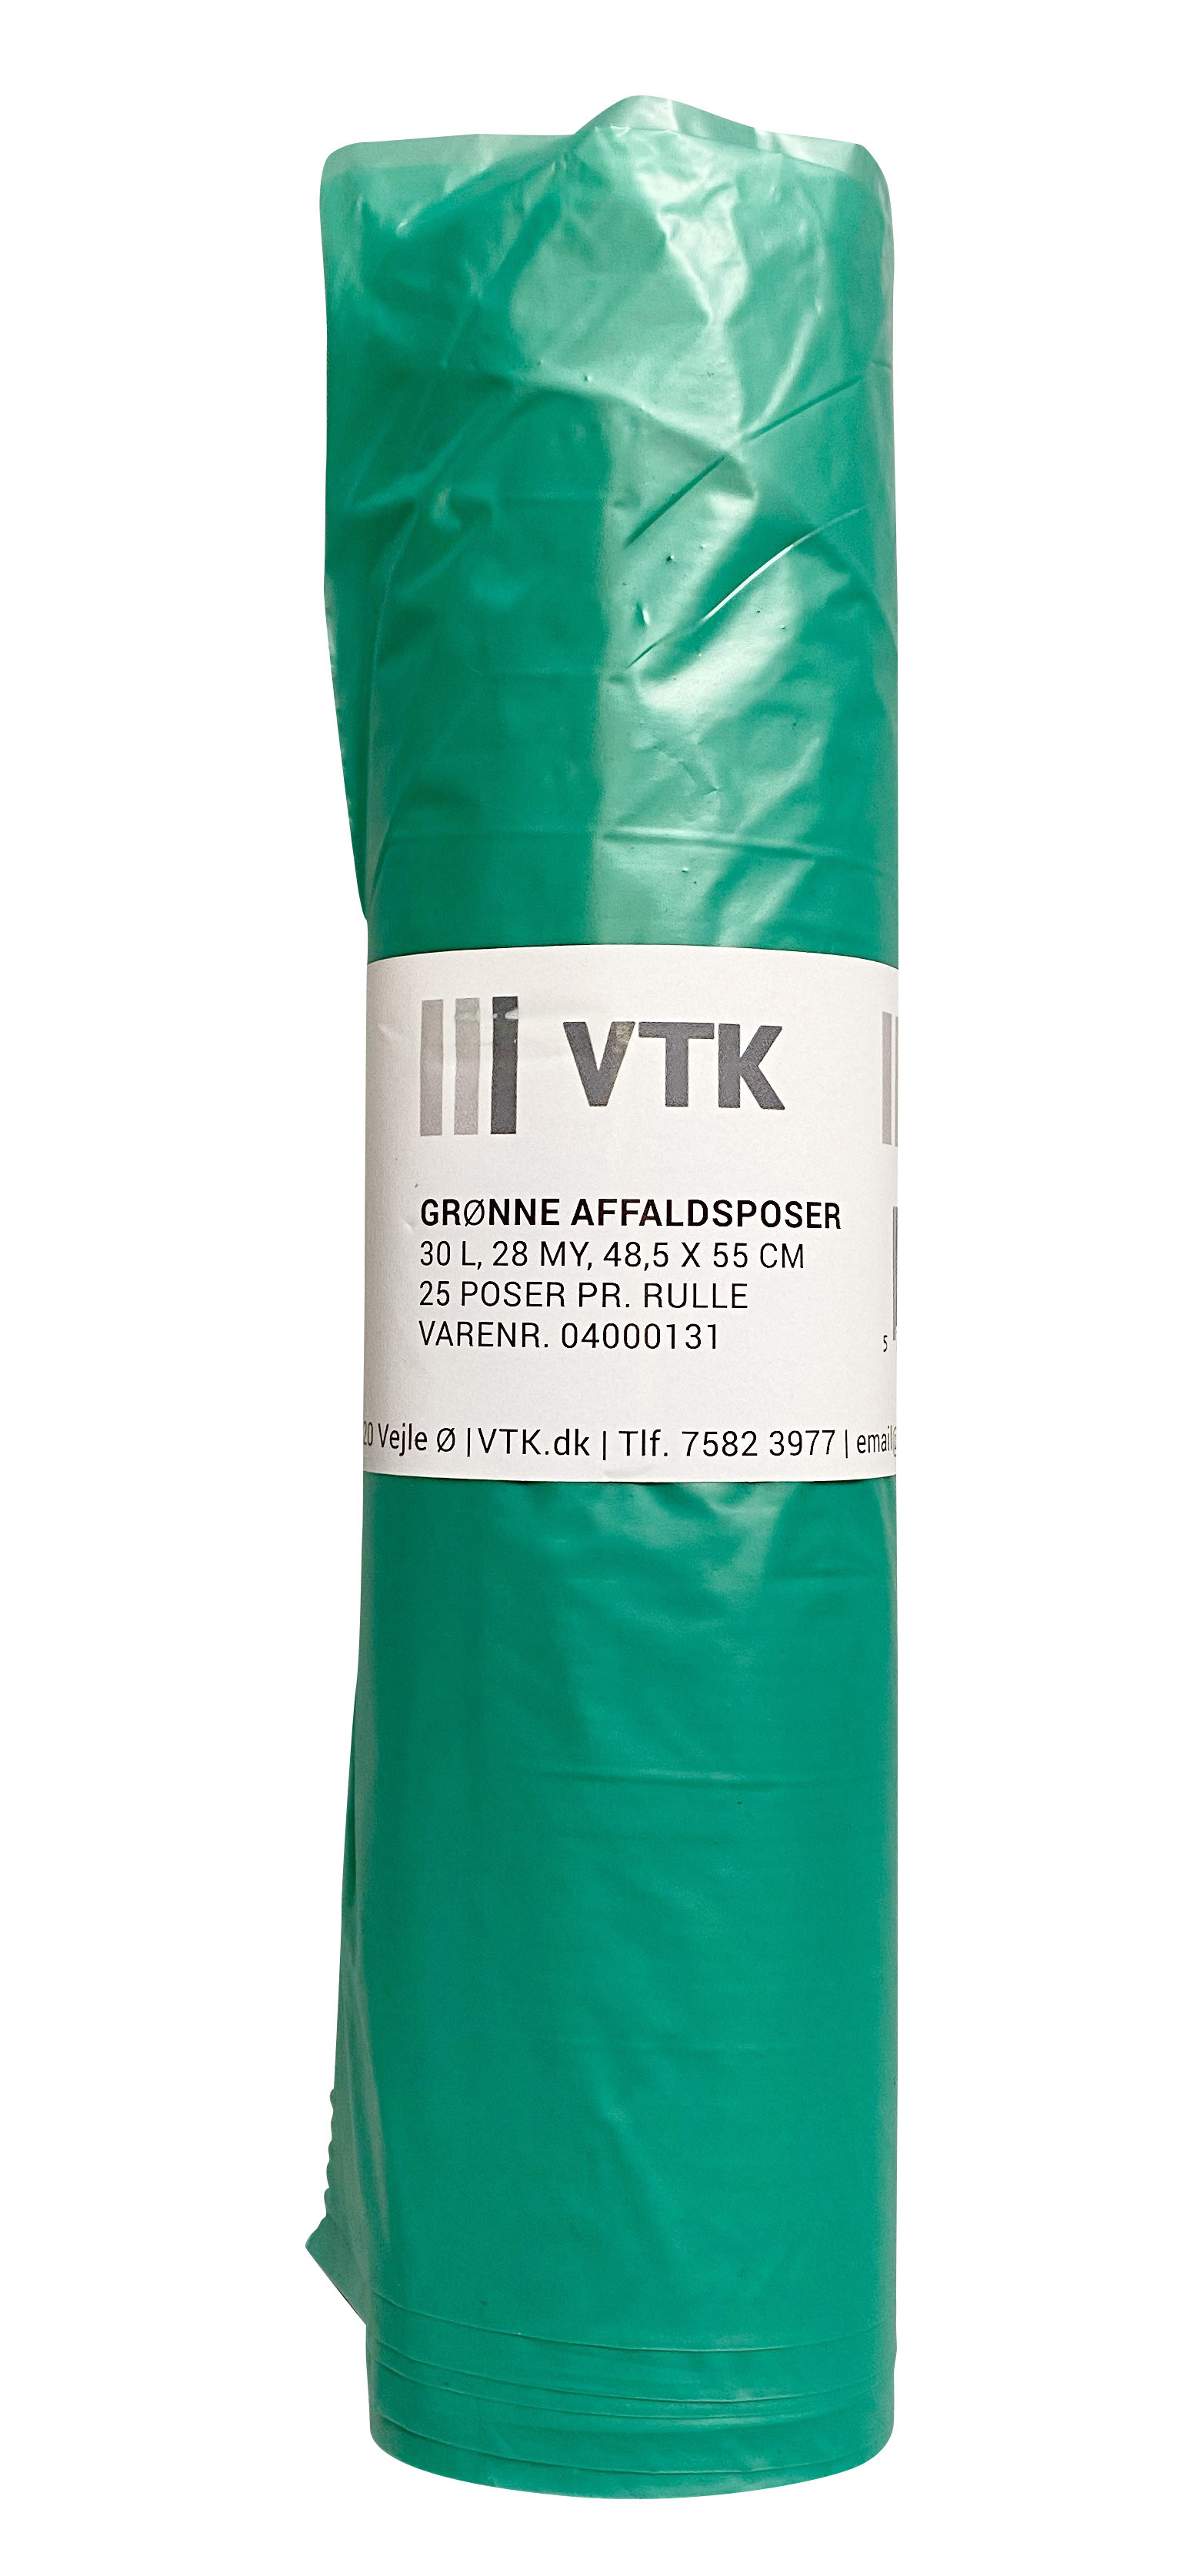 Se VTK Posen Affaldspose Grøn 30 l 20 rl 48,5 x 55 cm 28 my 25 ps/rl (450118) hos BLITE